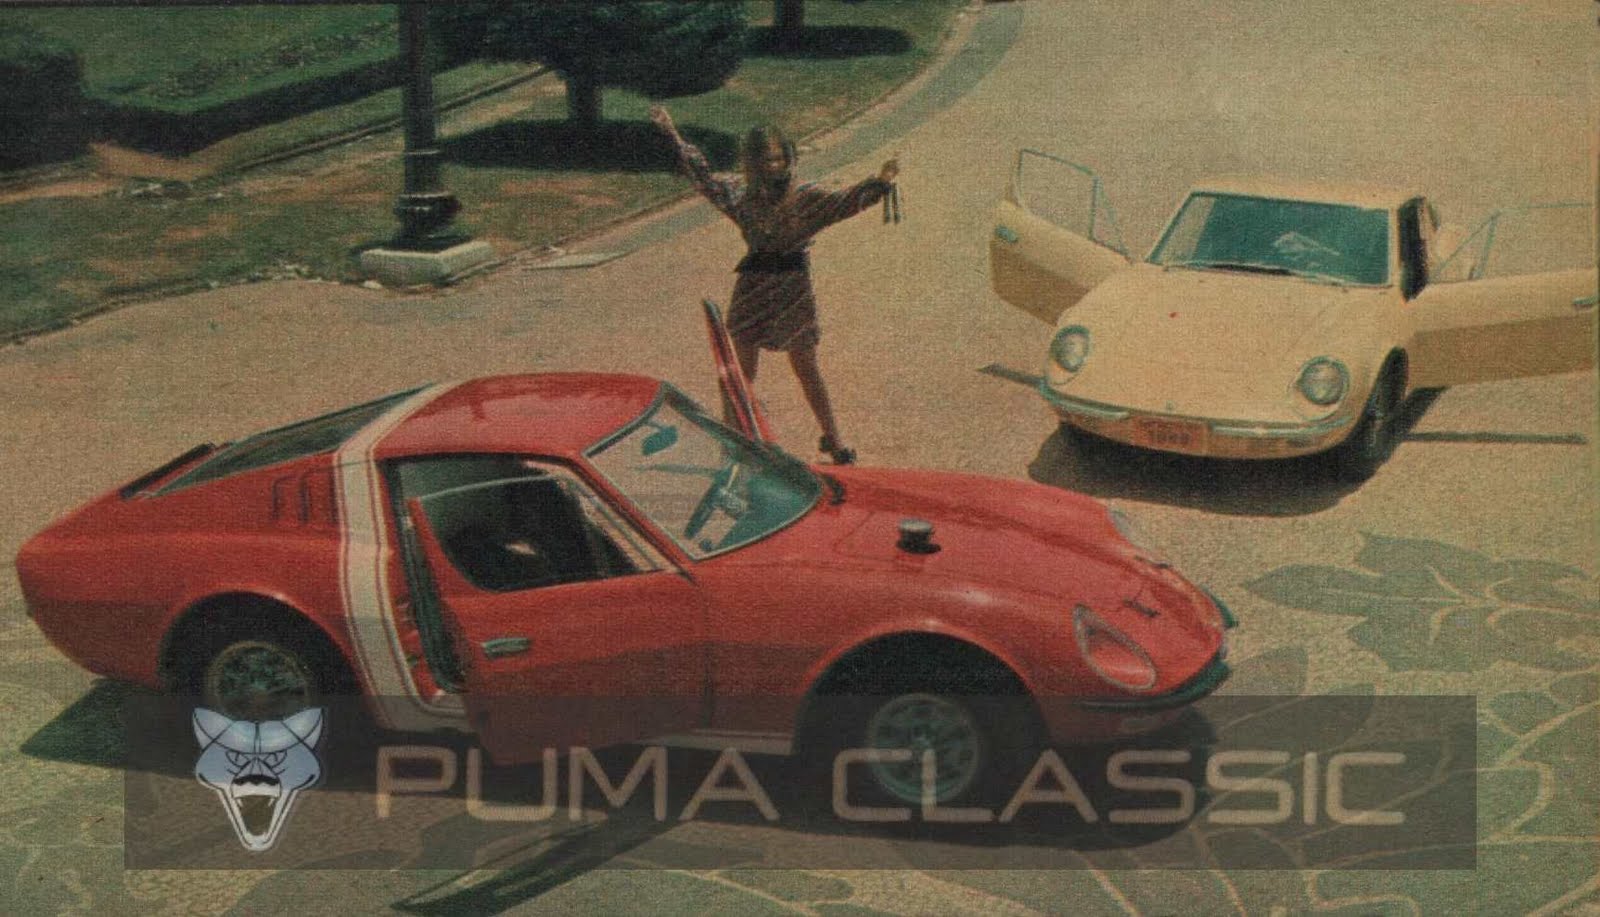 Puma Classic: Feras e Gatas